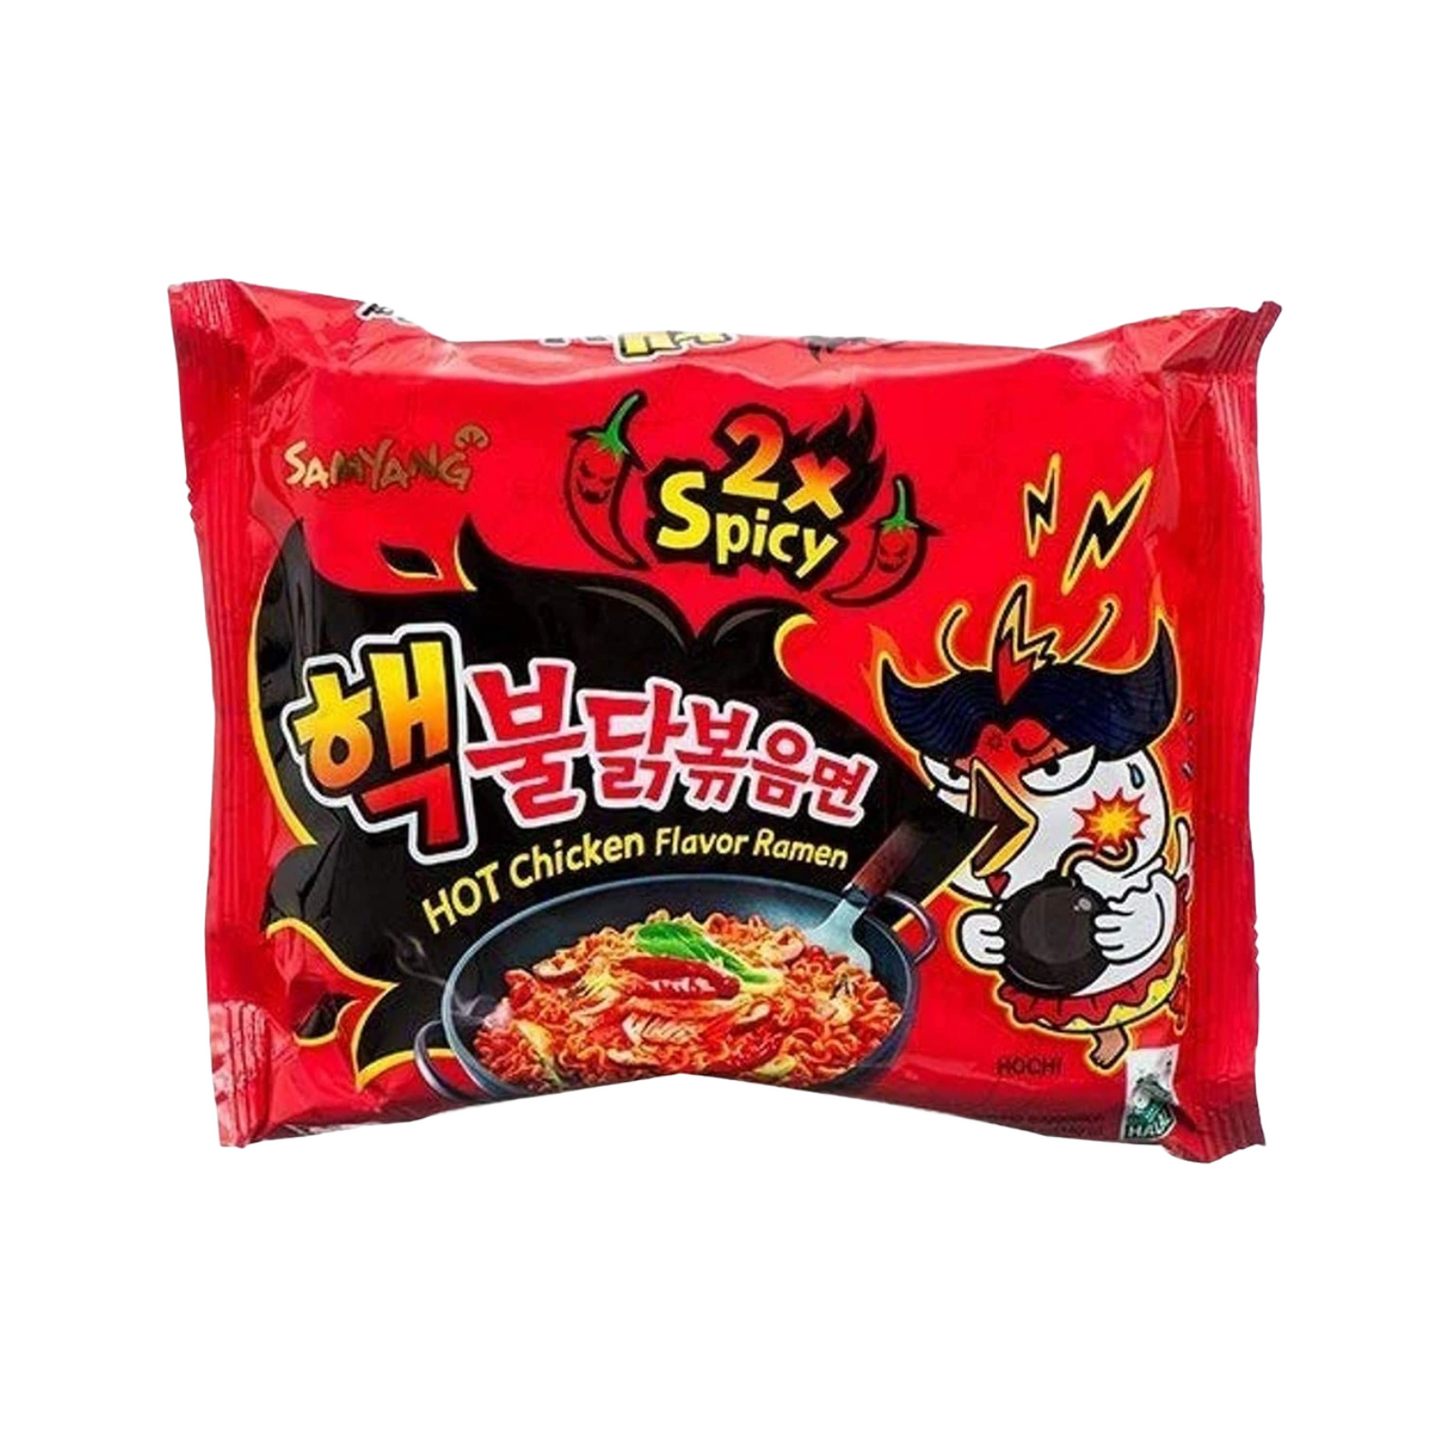 SAMYANG Buldak Spicy Hot (2x Spicy) Chicken Flavour Ramen Noodles - 140g